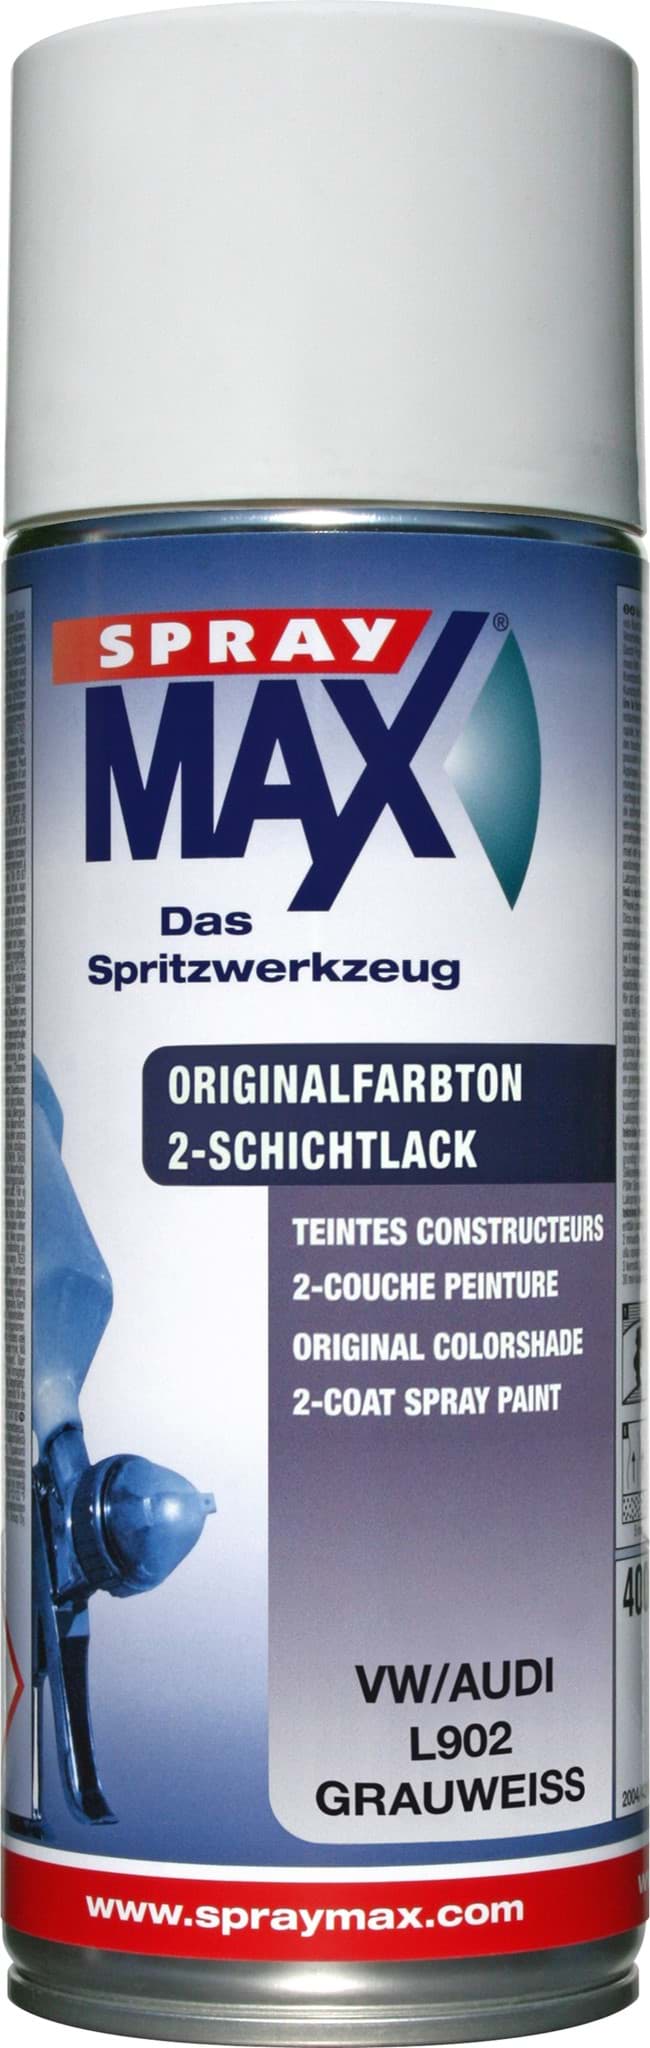 SprayMax Originalfarbton für VW L902 grauweiss resmi